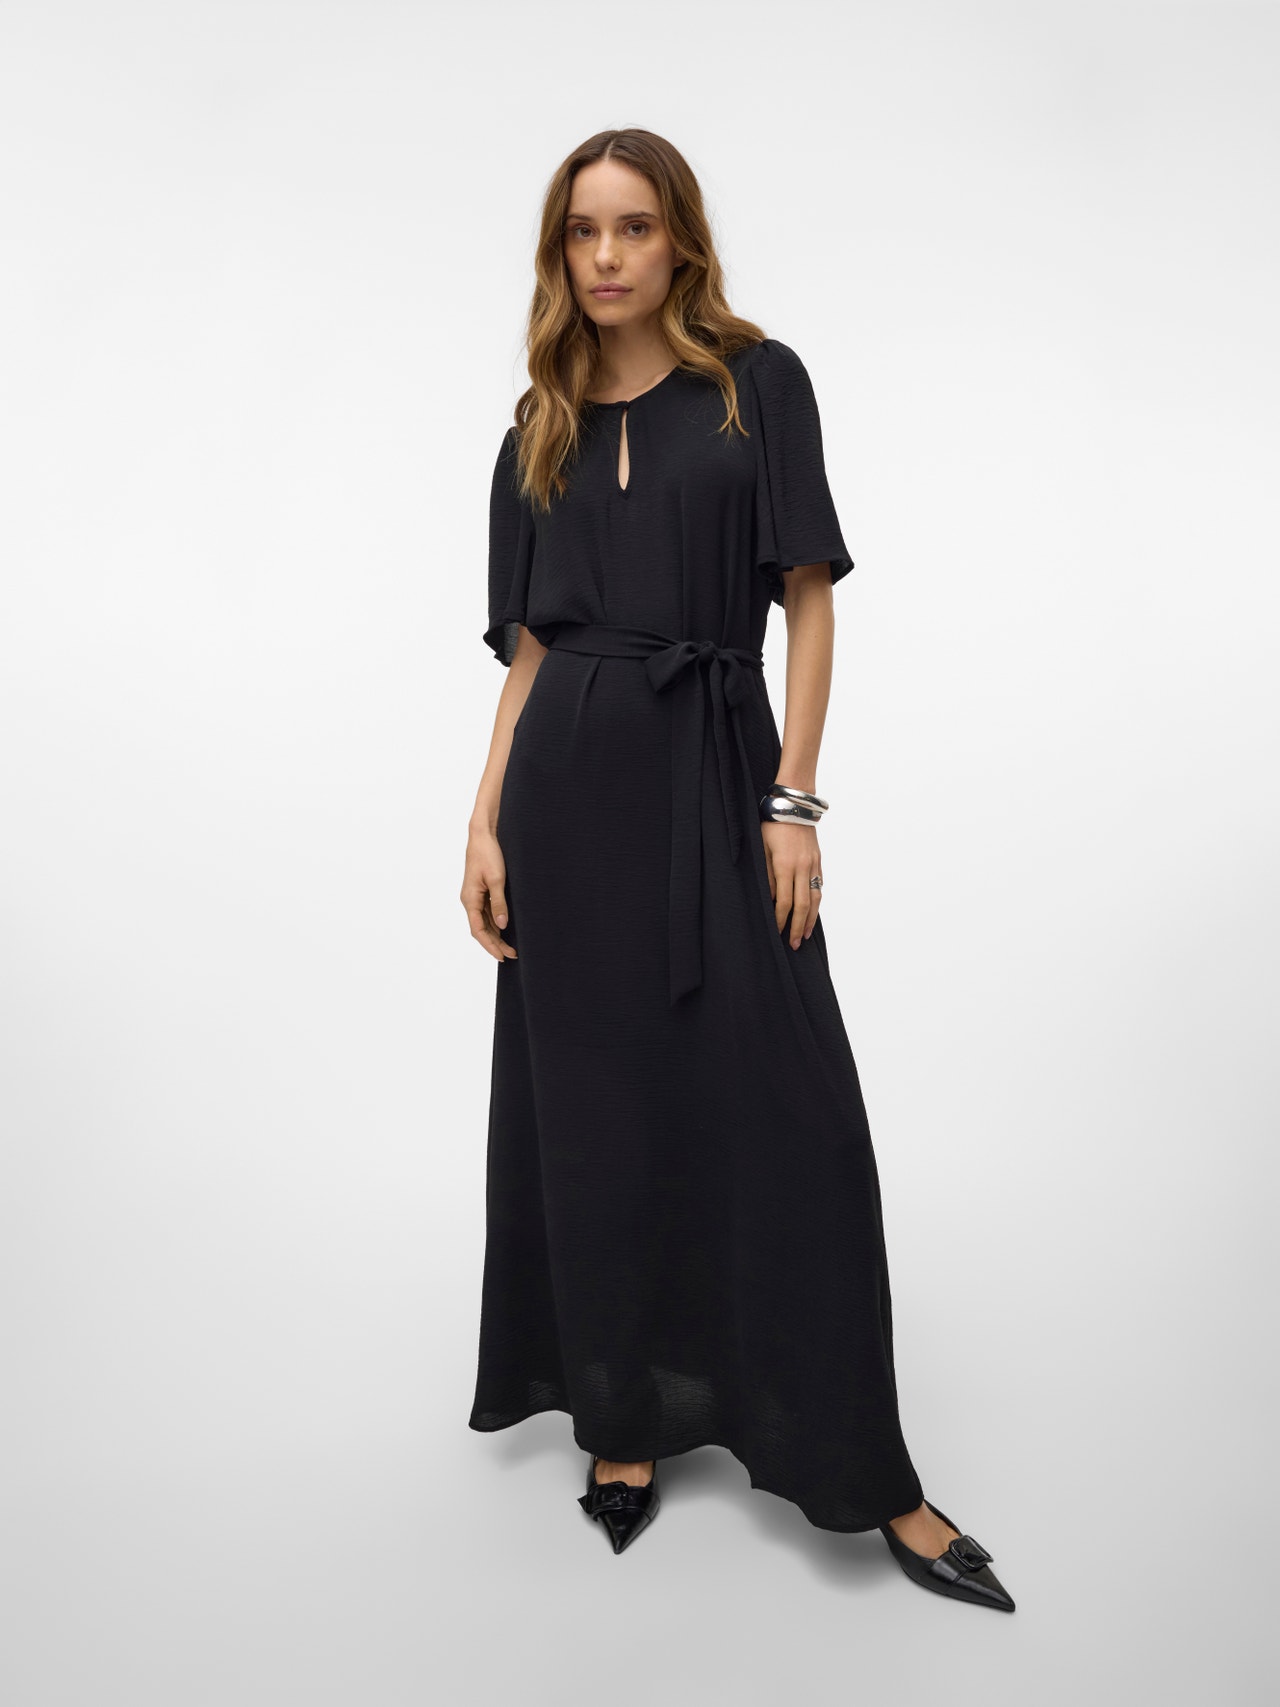 Vero Moda VMALVA Long dress -Black - 10314046